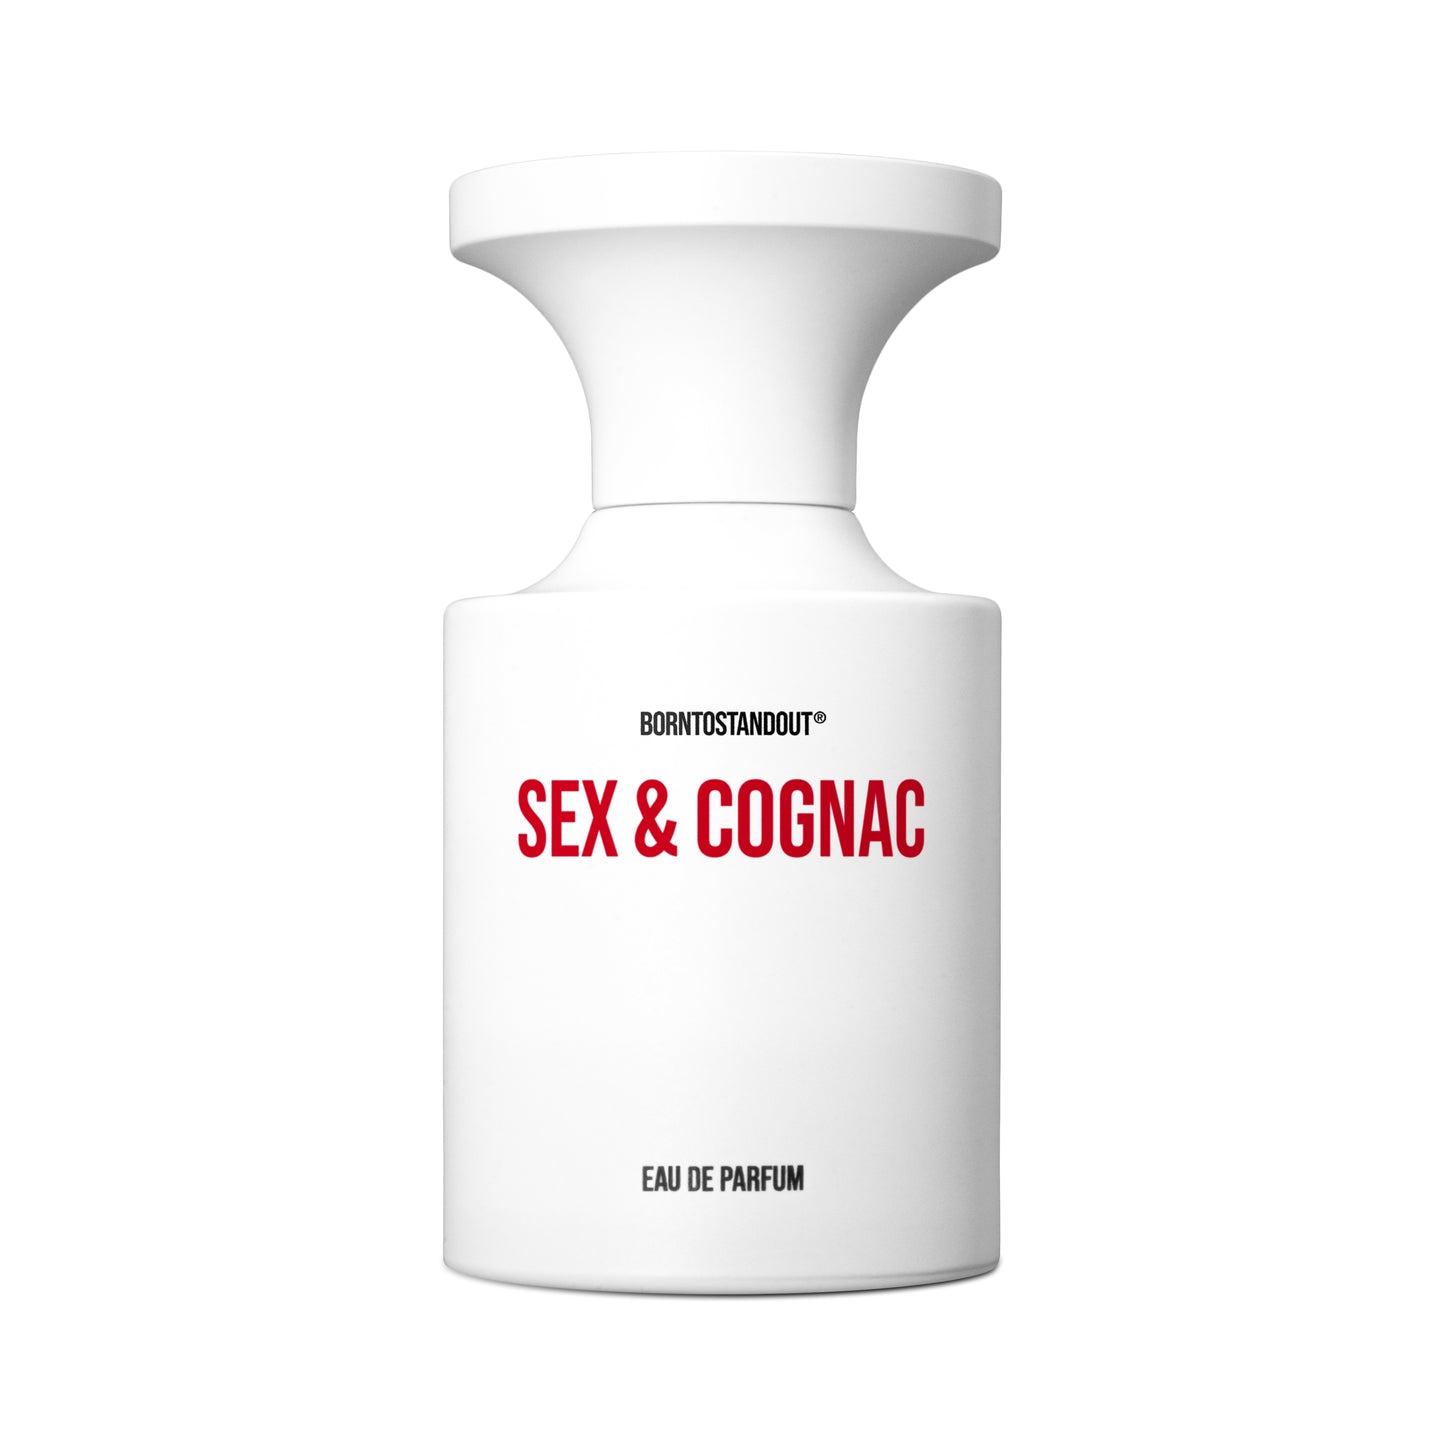 SEX & COGNAC